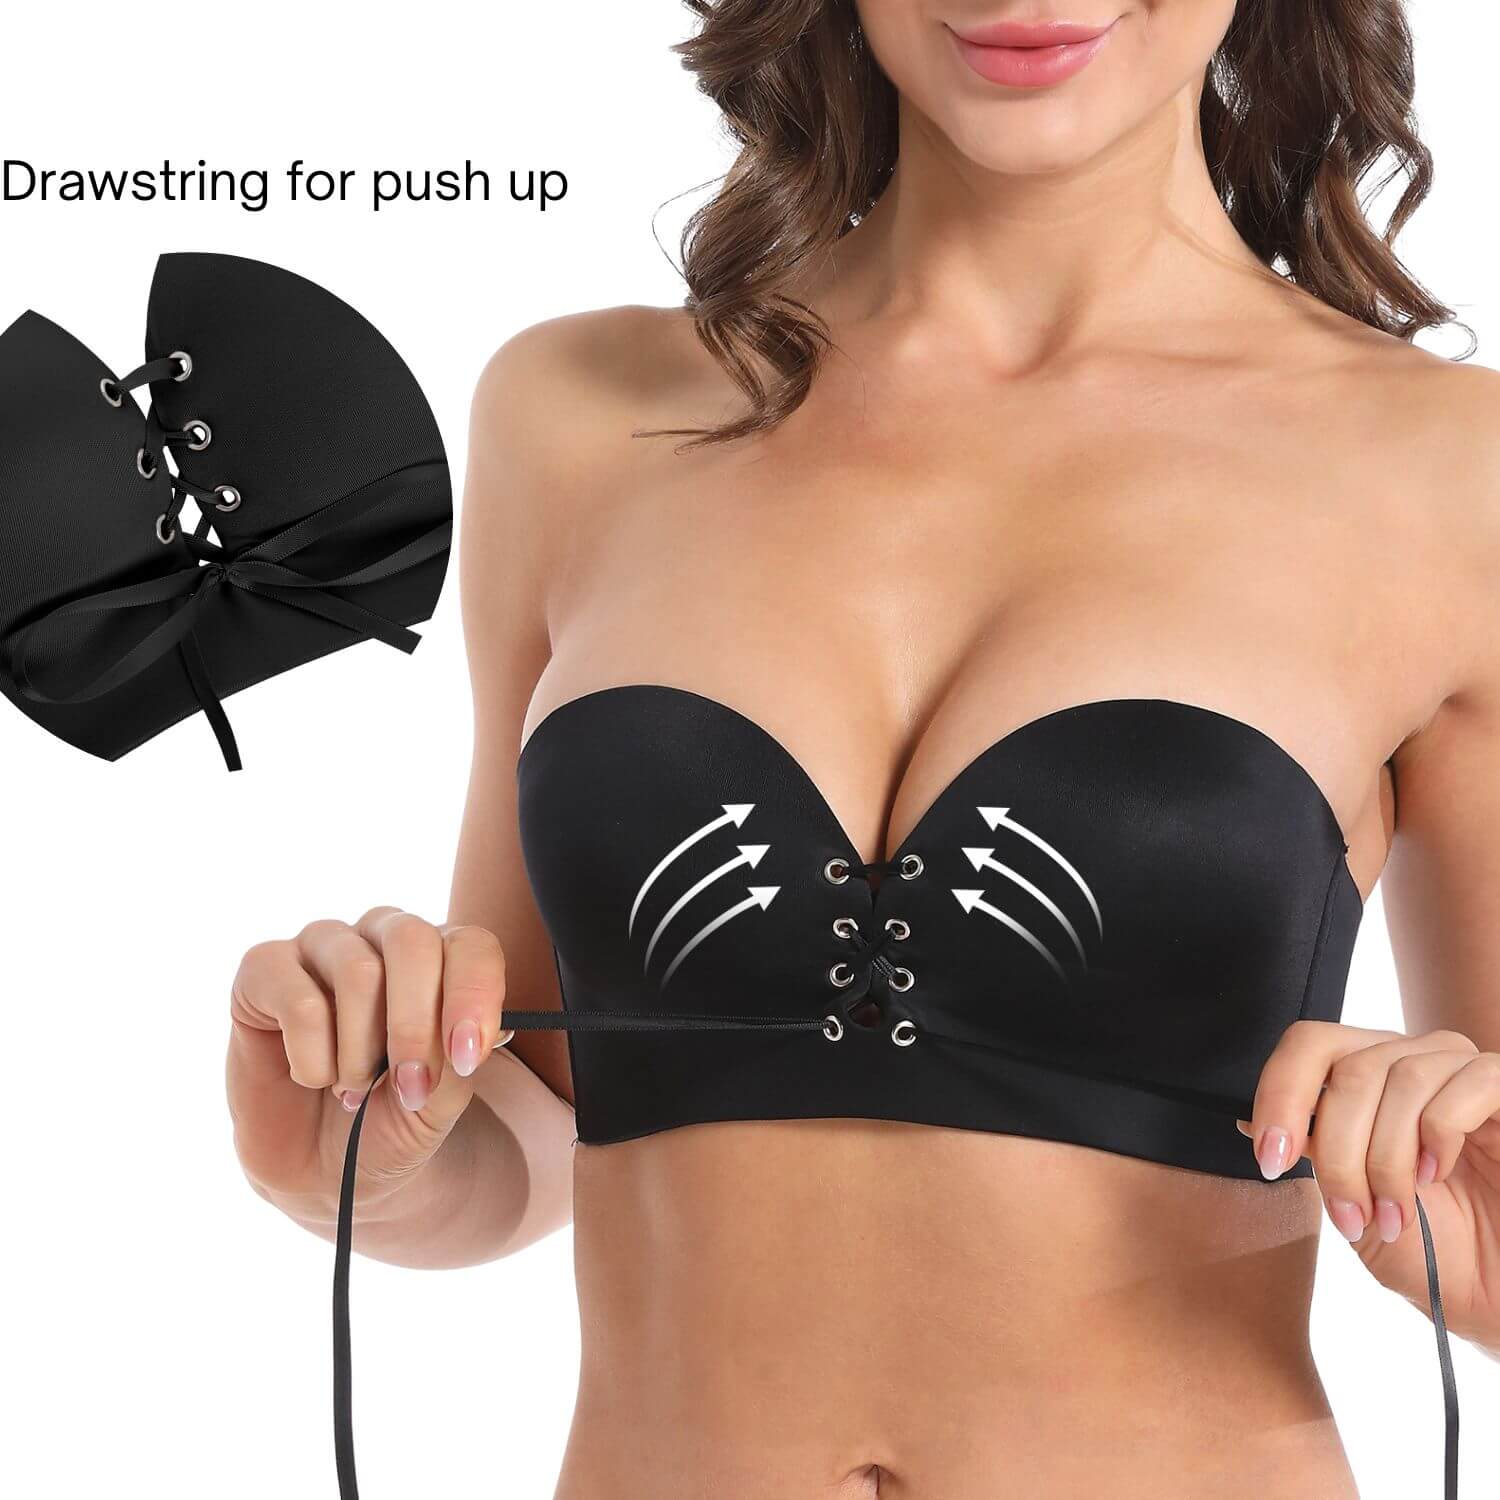 drawstring push up bra